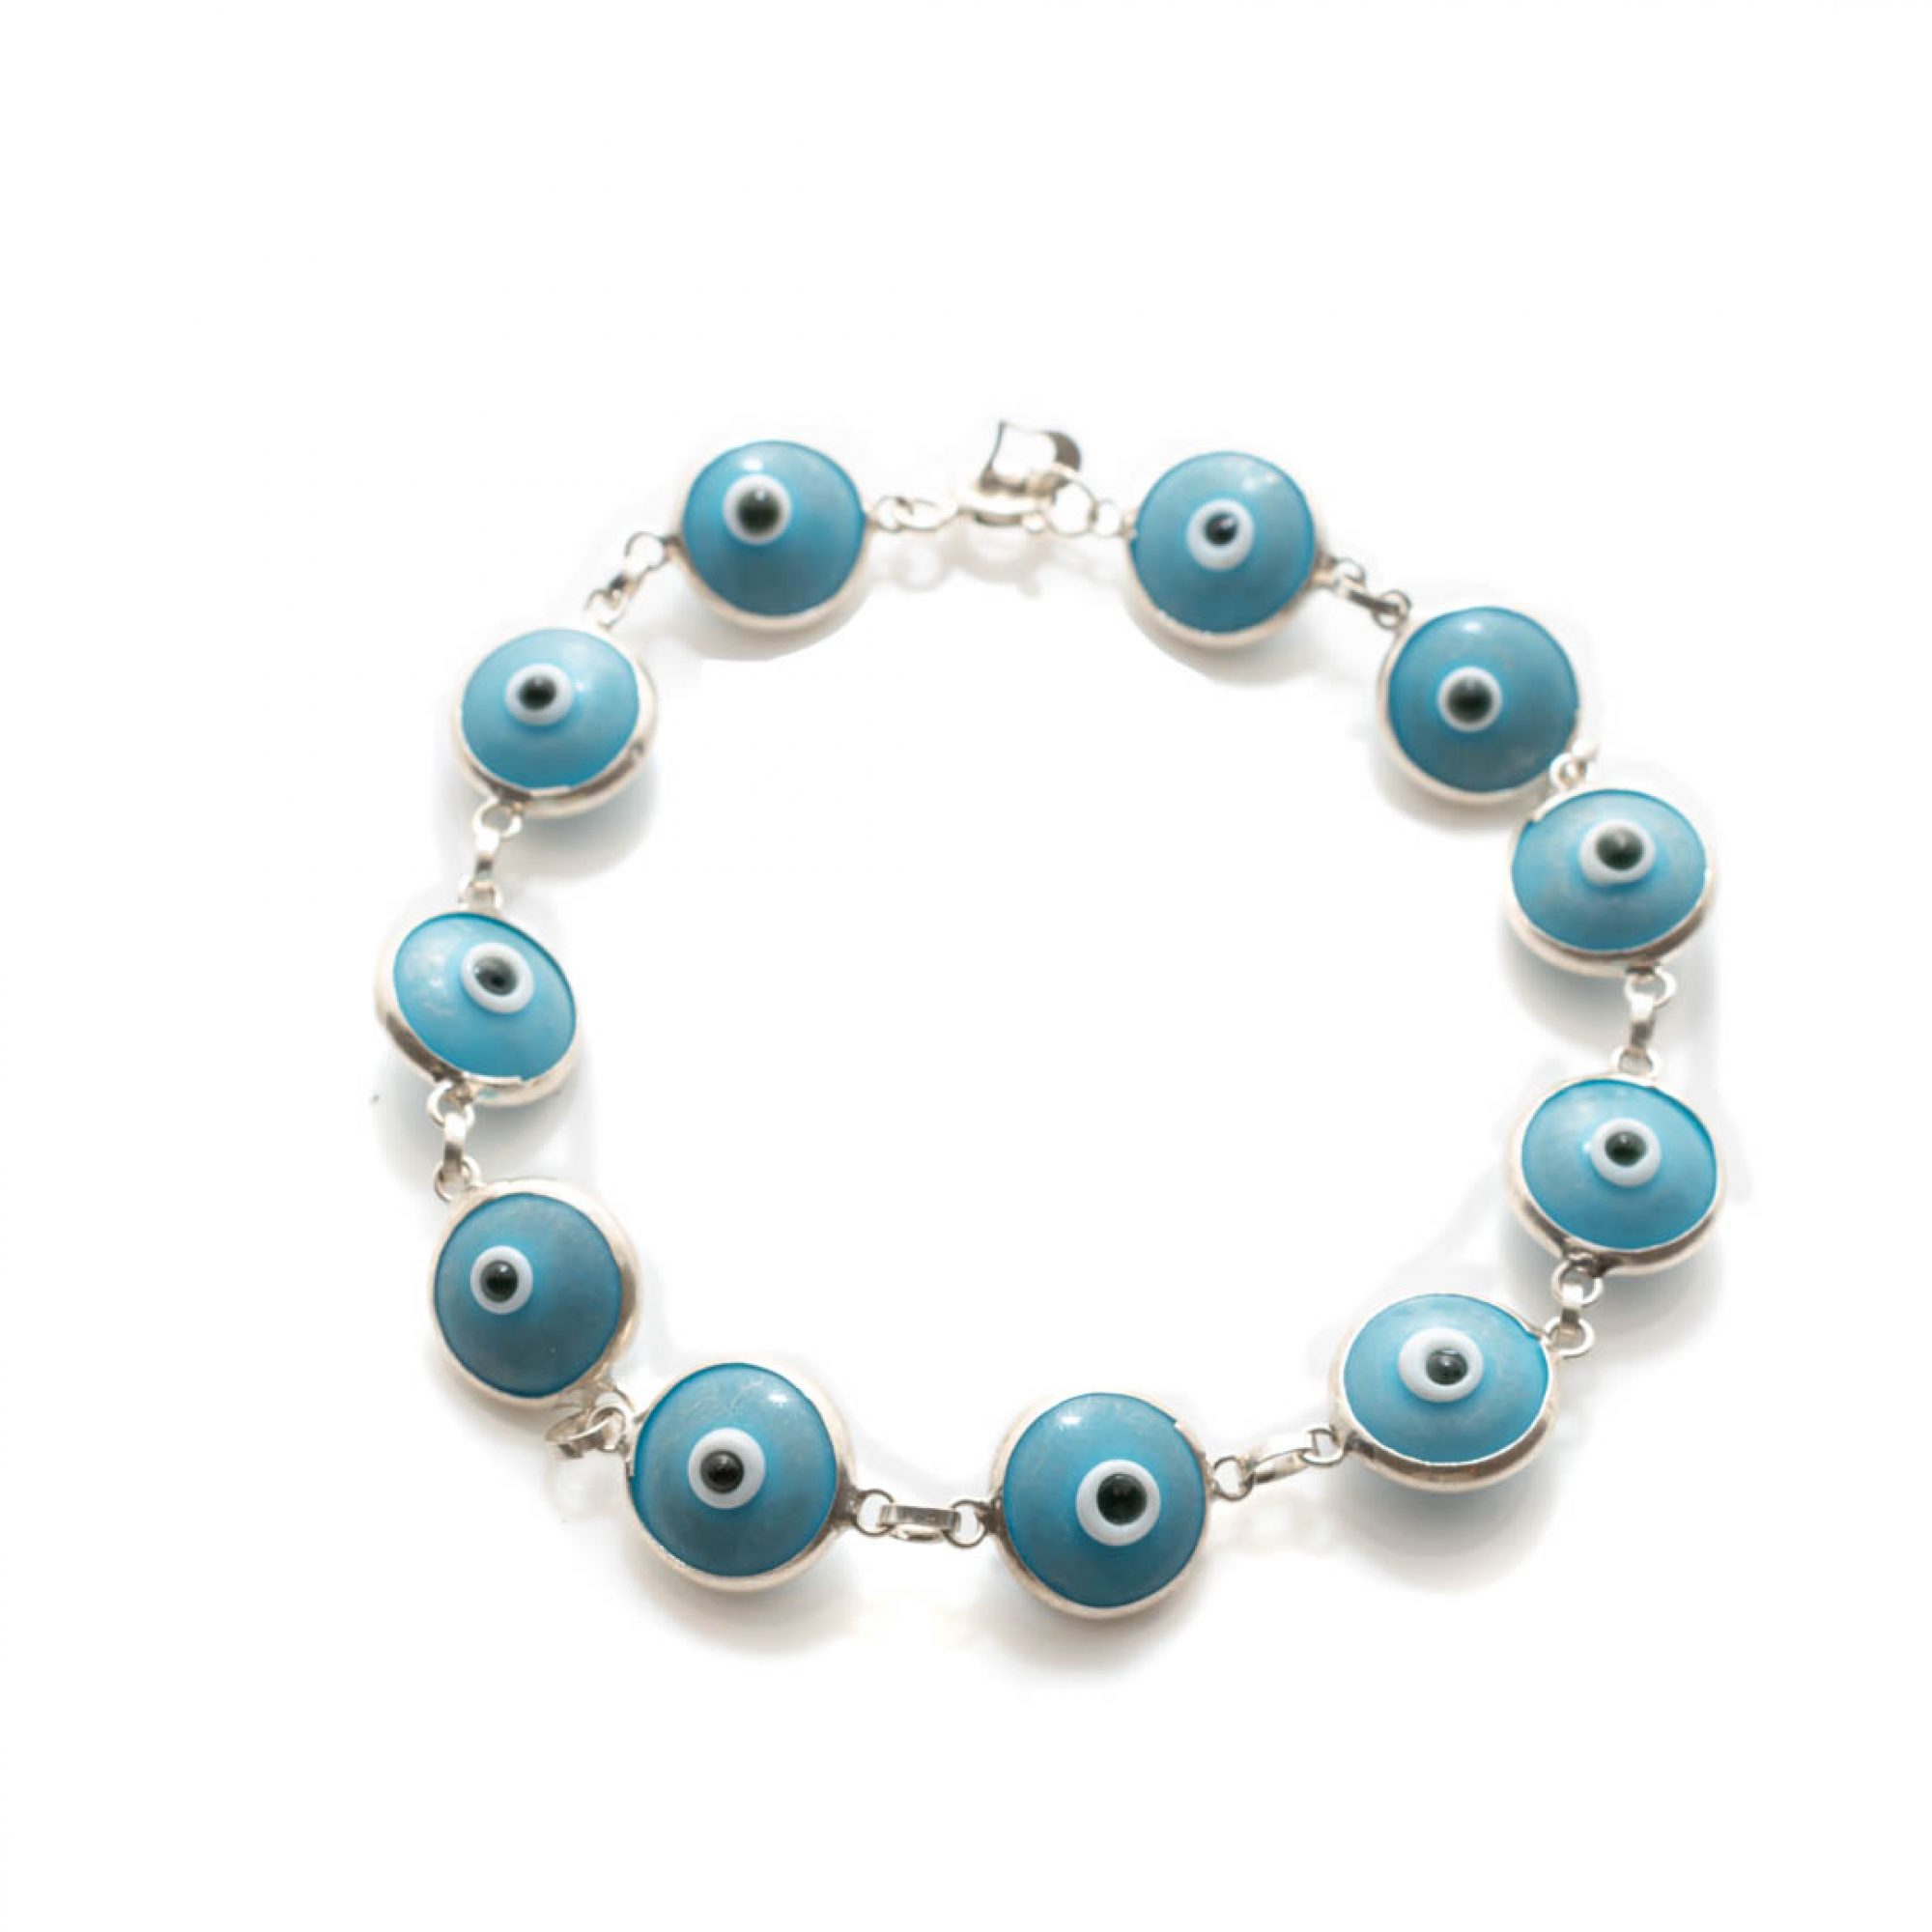 Eye bracelet with turquoise stones